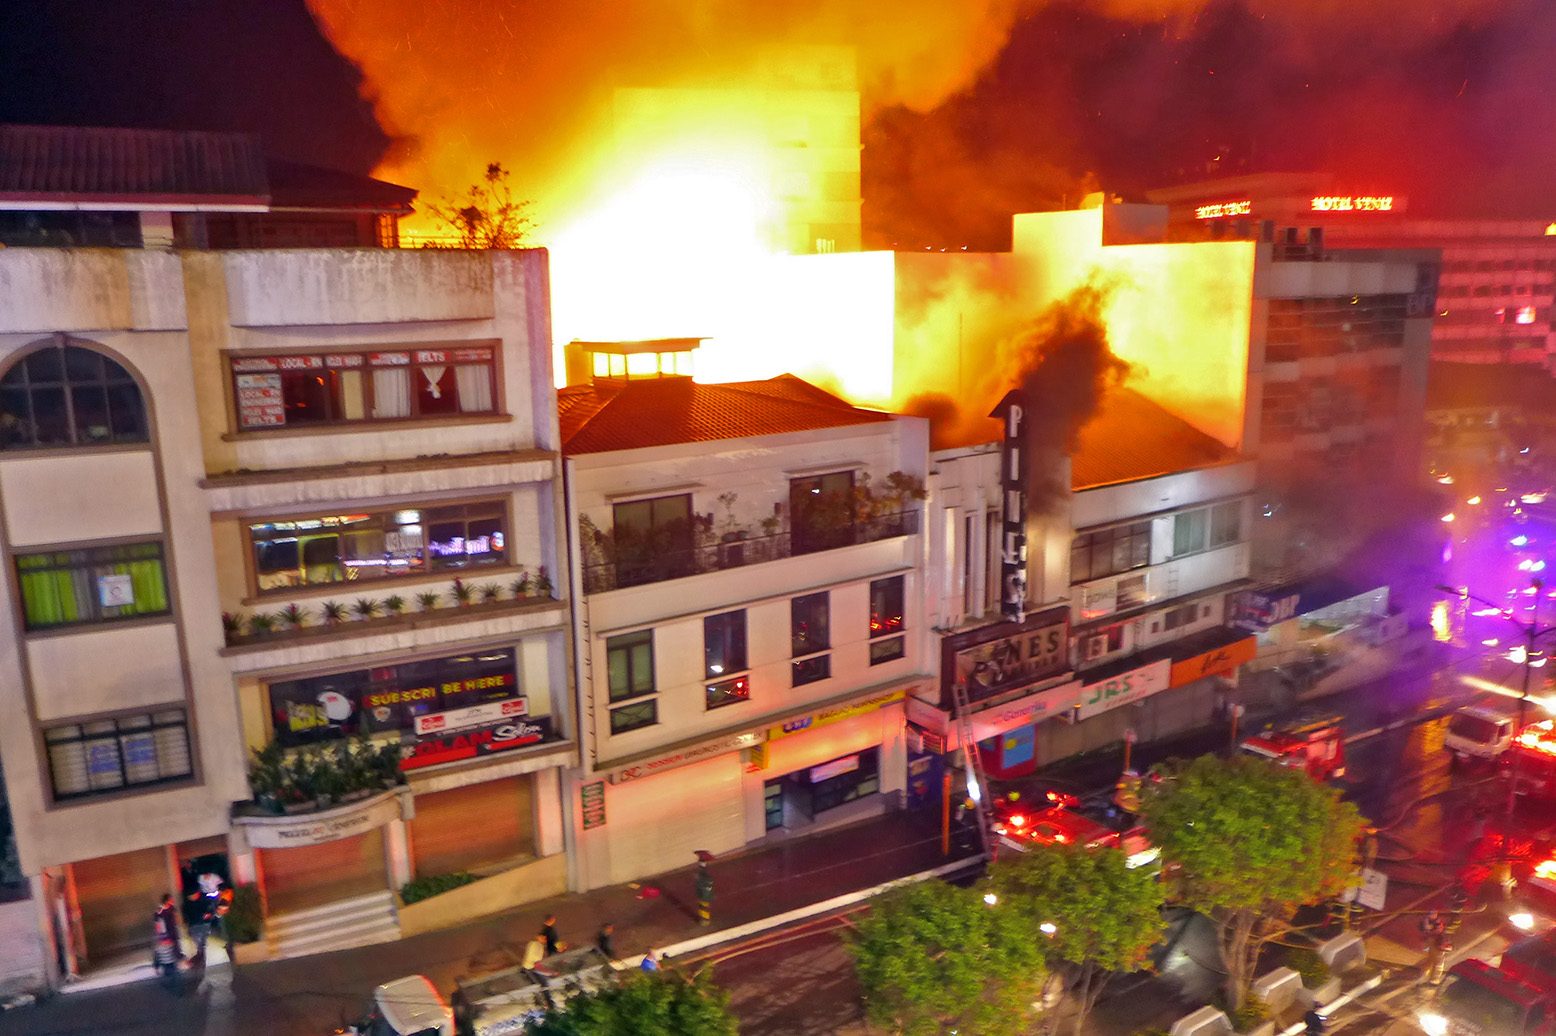 LOOK: Fire hits landmark art deco building in Baguio